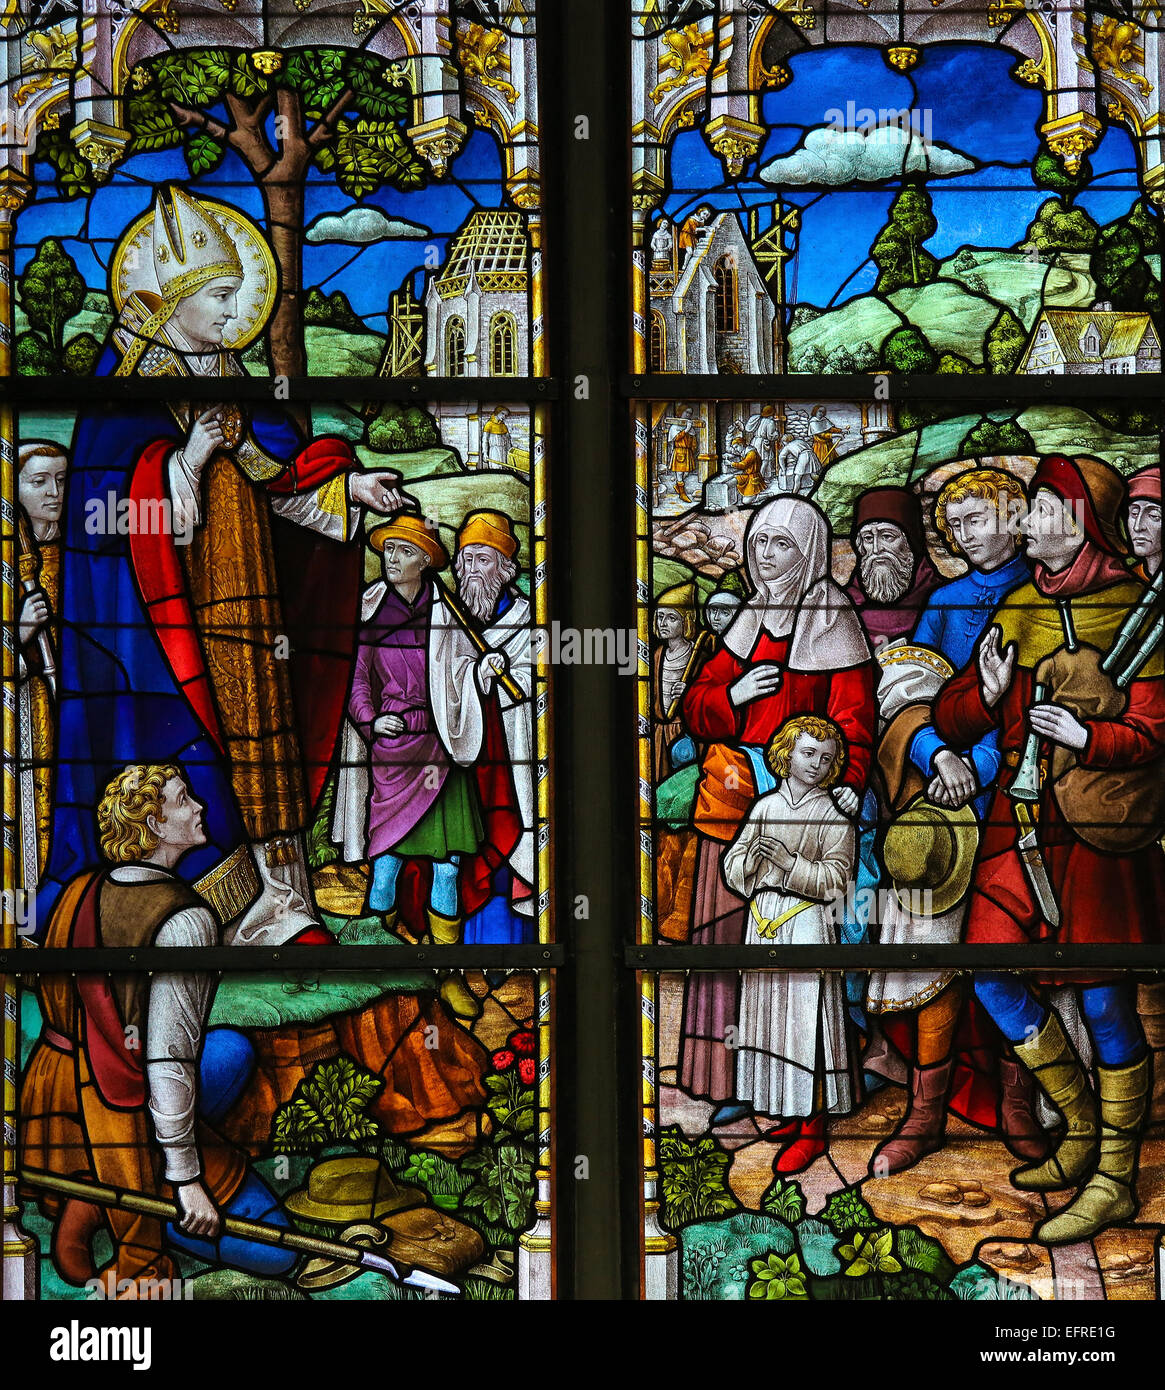 Glasmalerei-Fenster Darstellung Saint Rumbold, Schutzpatron von Mechelen, in der Kathedrale von Mechelen, Belgien. Stockfoto